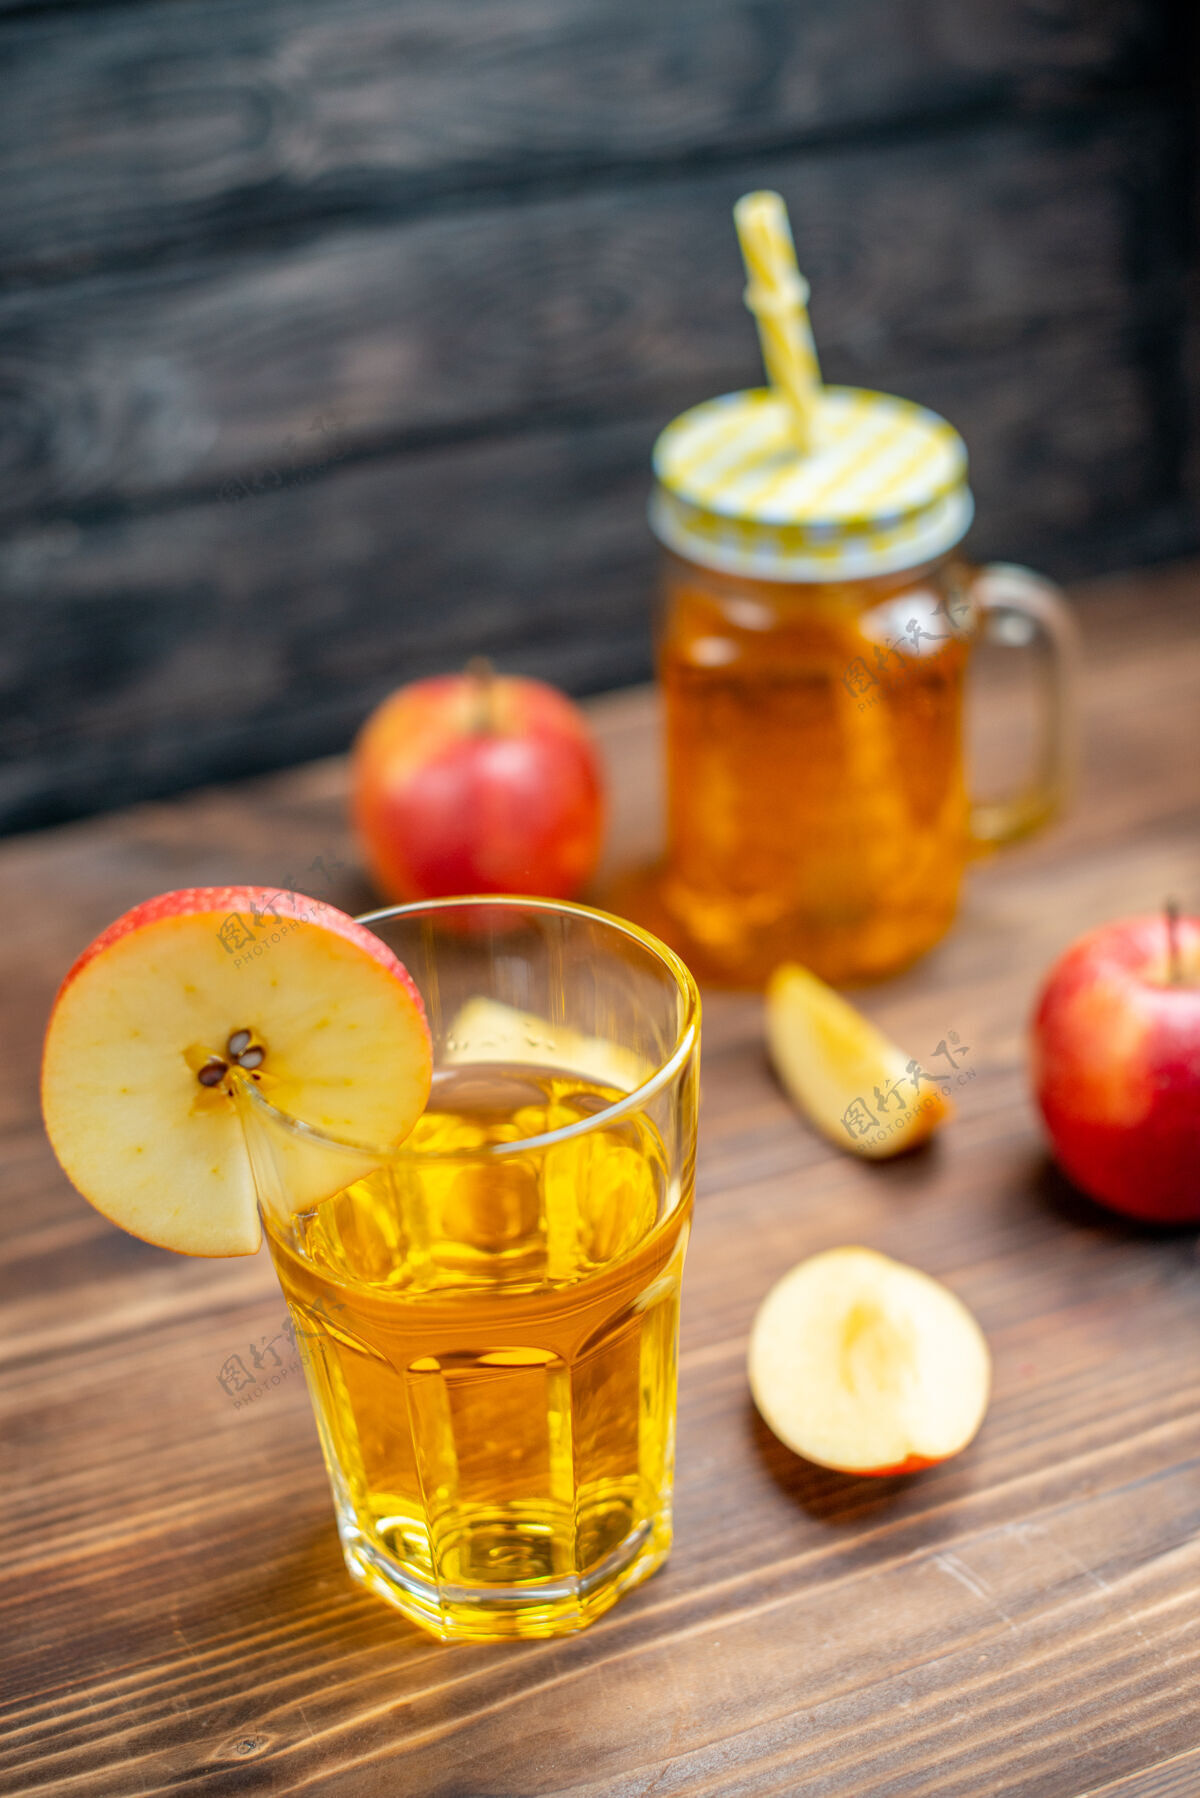 食物正面图新鲜苹果汁配新鲜苹果棕色木地板照片鸡尾酒水果饮料颜色果汁鸡尾酒蜂蜜